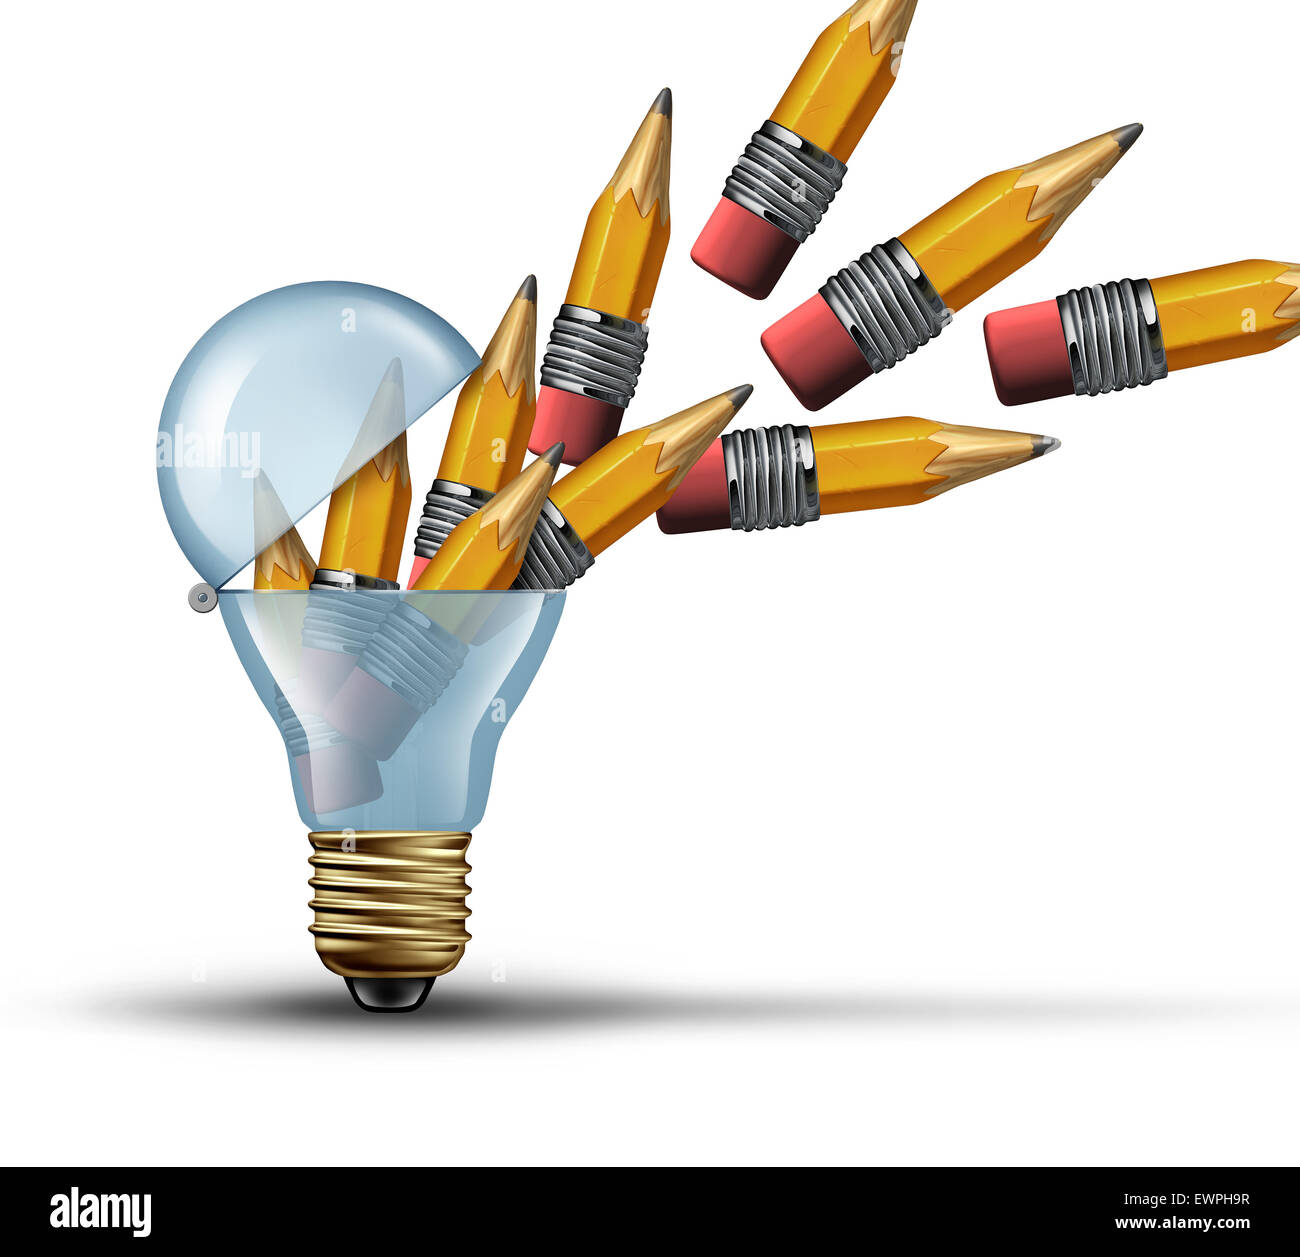 L'imagination et la créativité comme un concept ampoule ampoule ouverte ou symbole de la pensée hors de la boîte avec un groupe de crayons, étant libérés par l'intérieur en tant que réseau créatif de la communication marketing. Banque D'Images